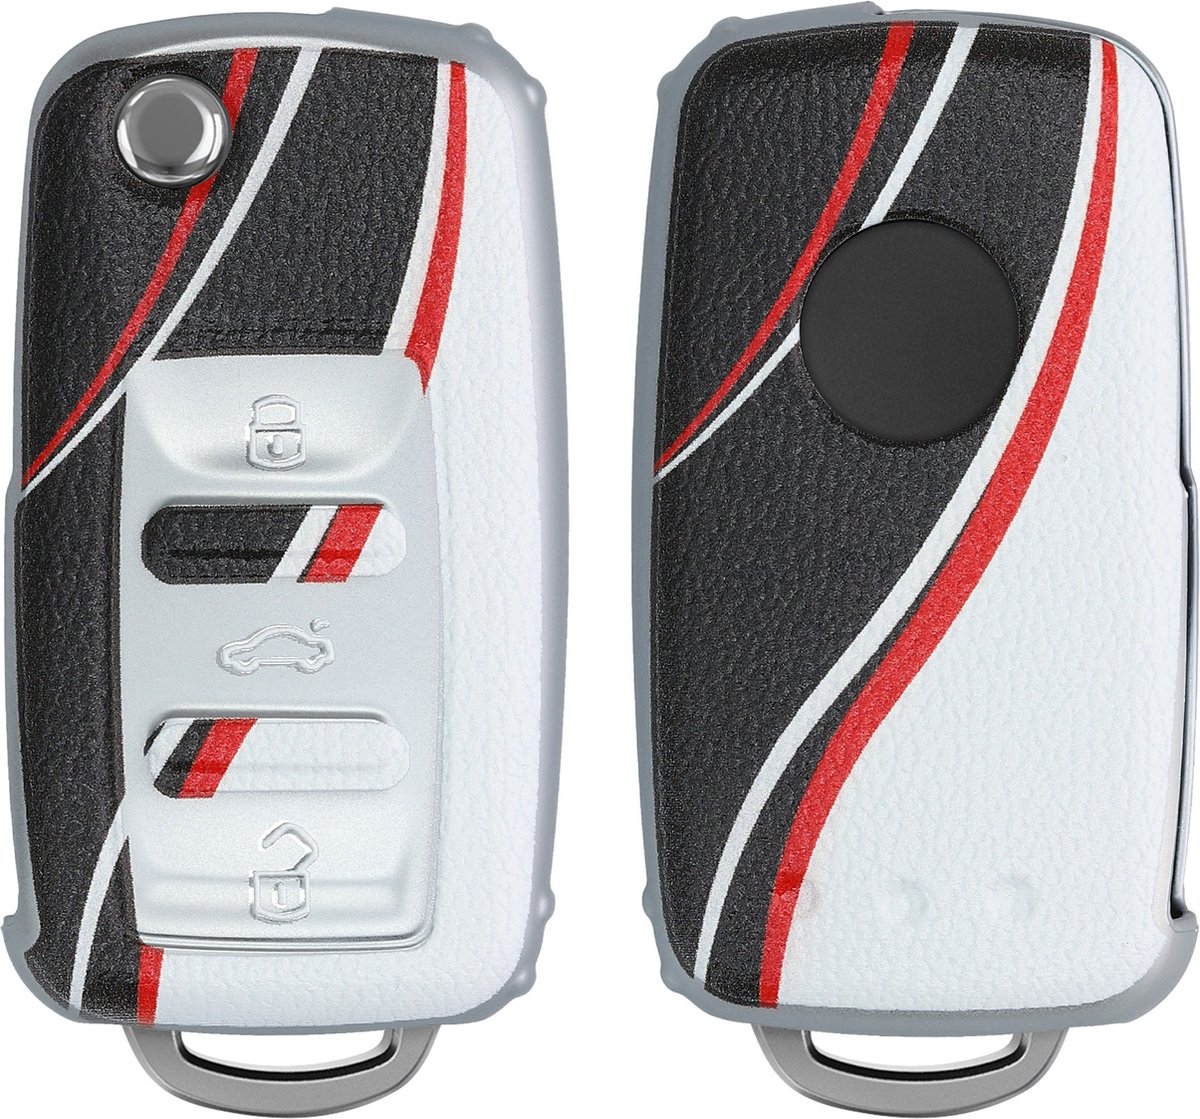 kwmobile autosleutelhoes compatibel met VW Skoda Seat 3-knops autosleutel - Cover in rood / zwart / wit - Kleurengolf design